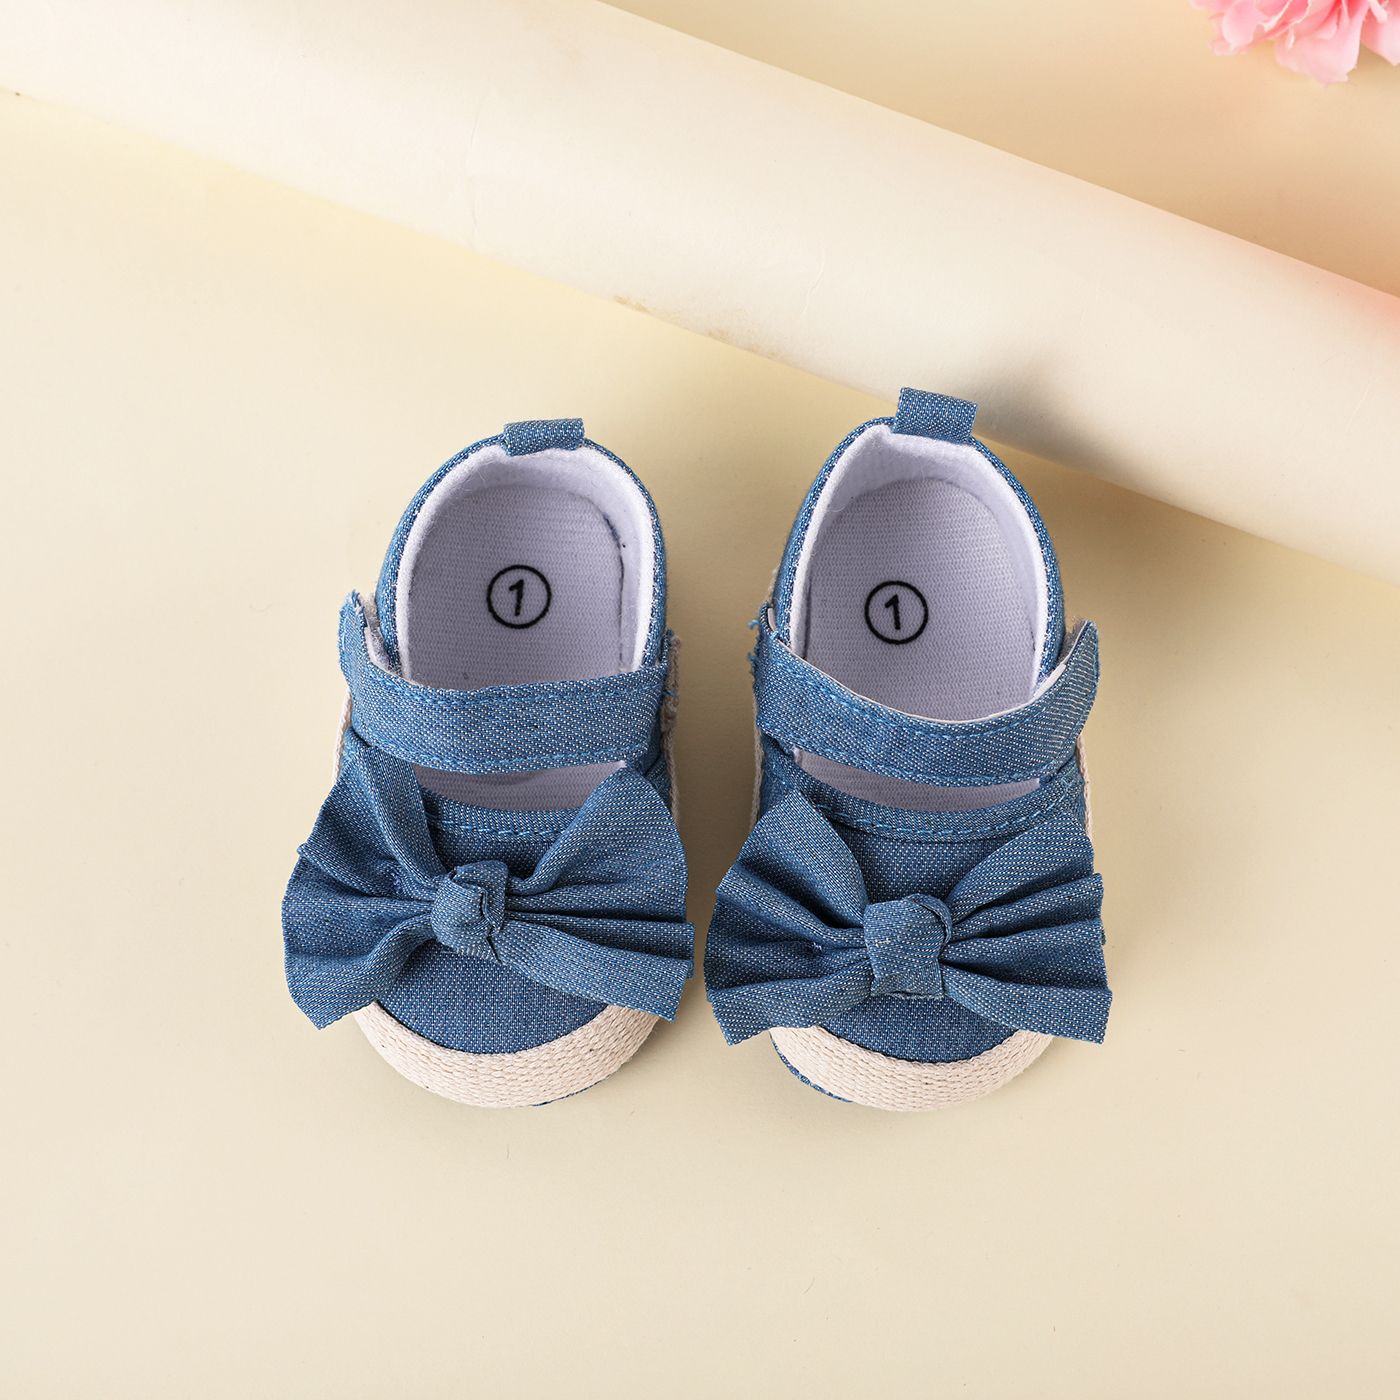 Bébé / Enfant En Bas âge Décor Arc Solide Chaussures Prewalker